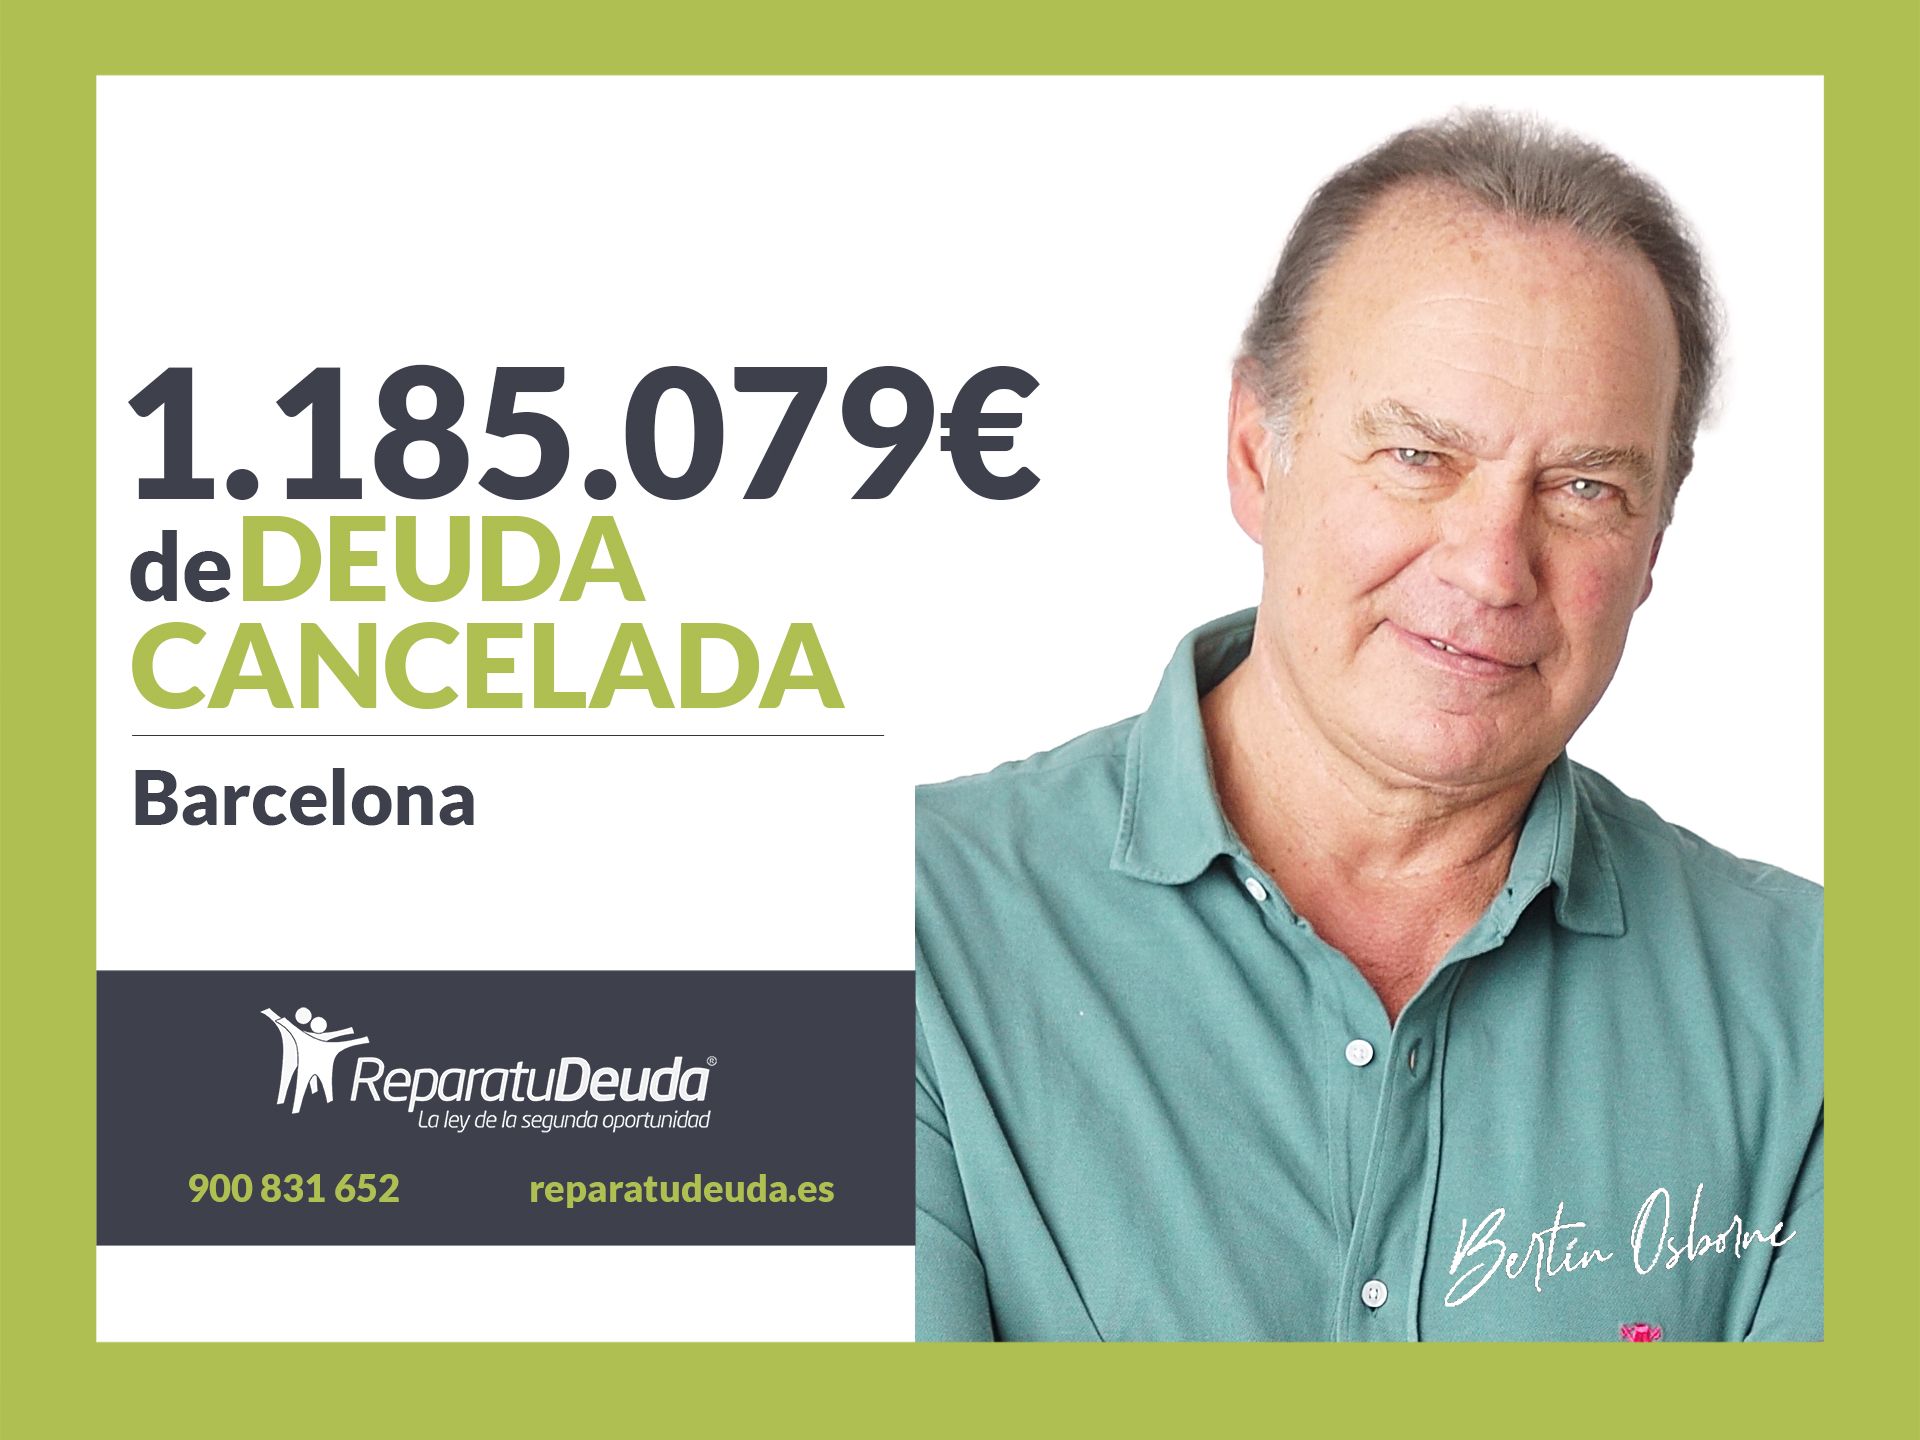 Repara tu Deuda Abogados cancela 1.185.079 ? en Barcelona (Catalunya) con la Ley de la Segunda Oportunidad